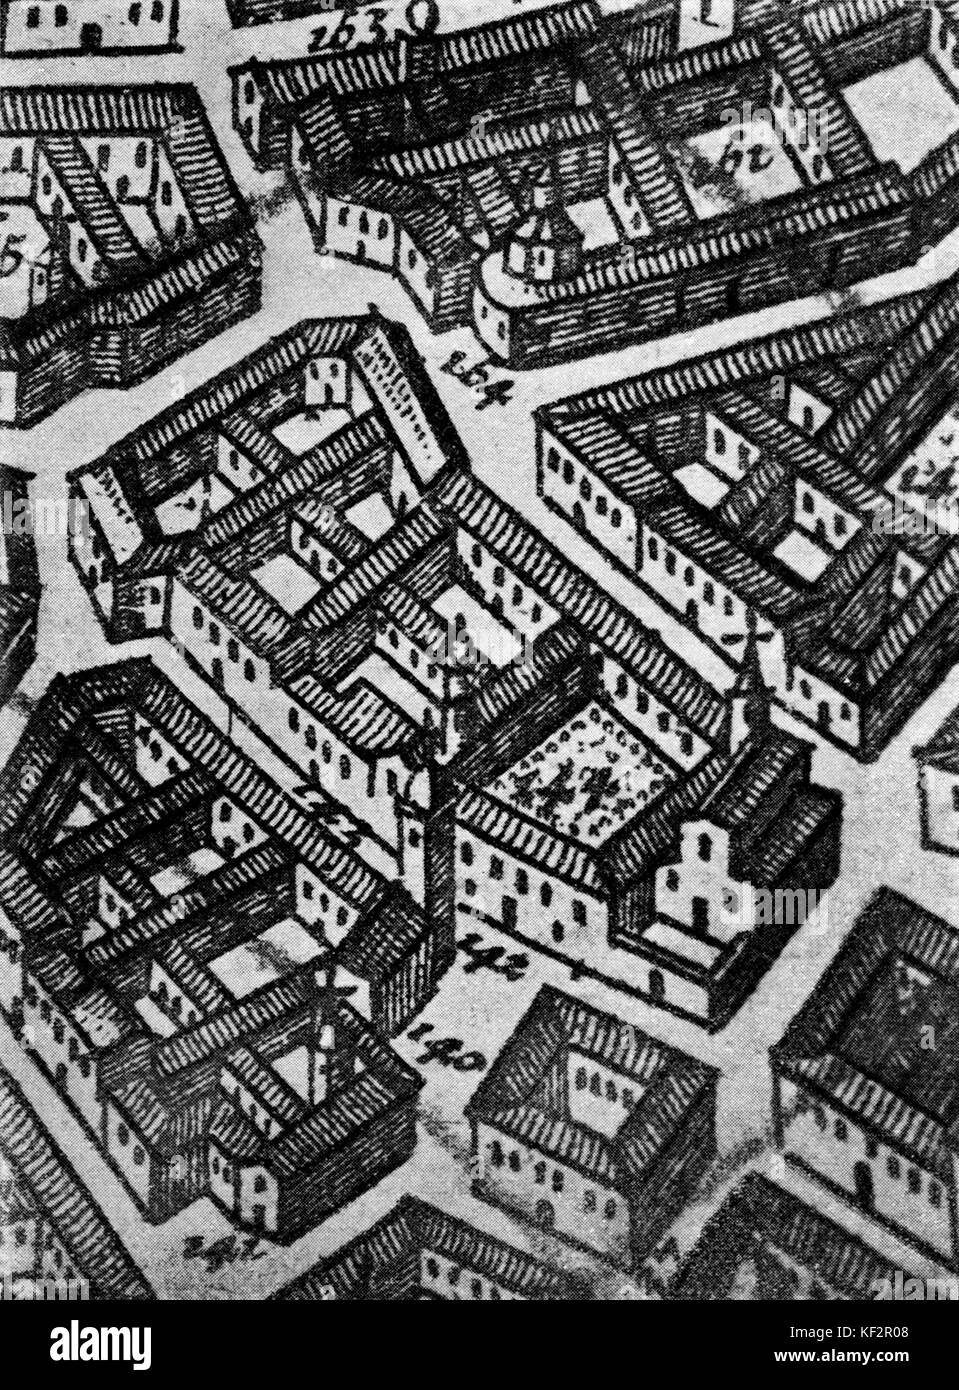 Vista aerea di S Maria della Scala e la sua vicinanza. Da una carta topografica di Milano nel XVIII secolo. A cura di R G Alberts, 1724. Foto Stock